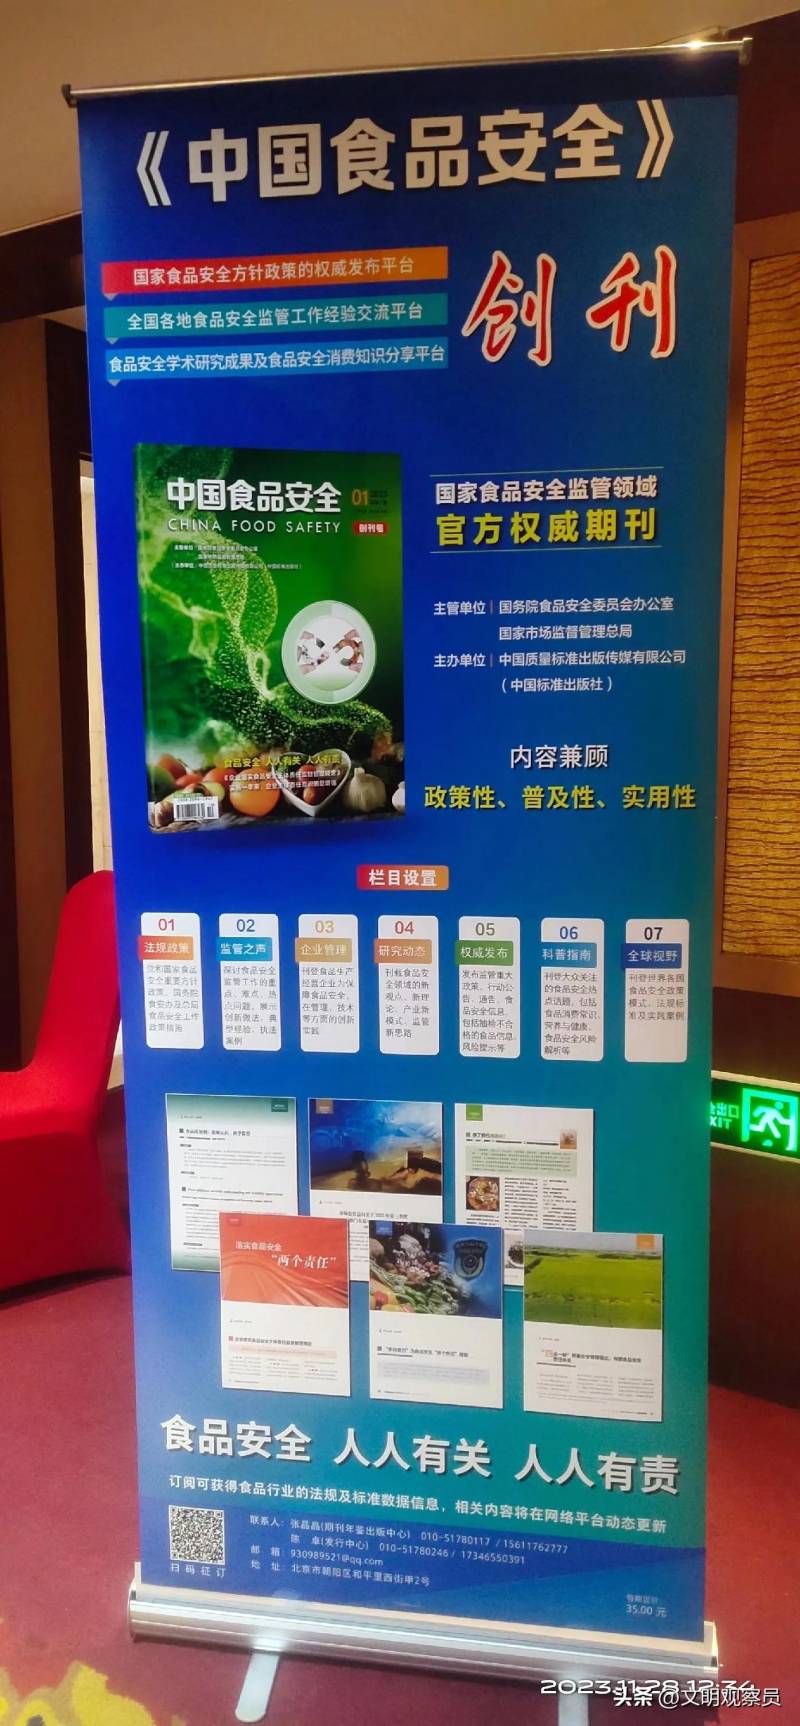 中国食品安全报社的微博，助力食品安全宣传 守护公众健康